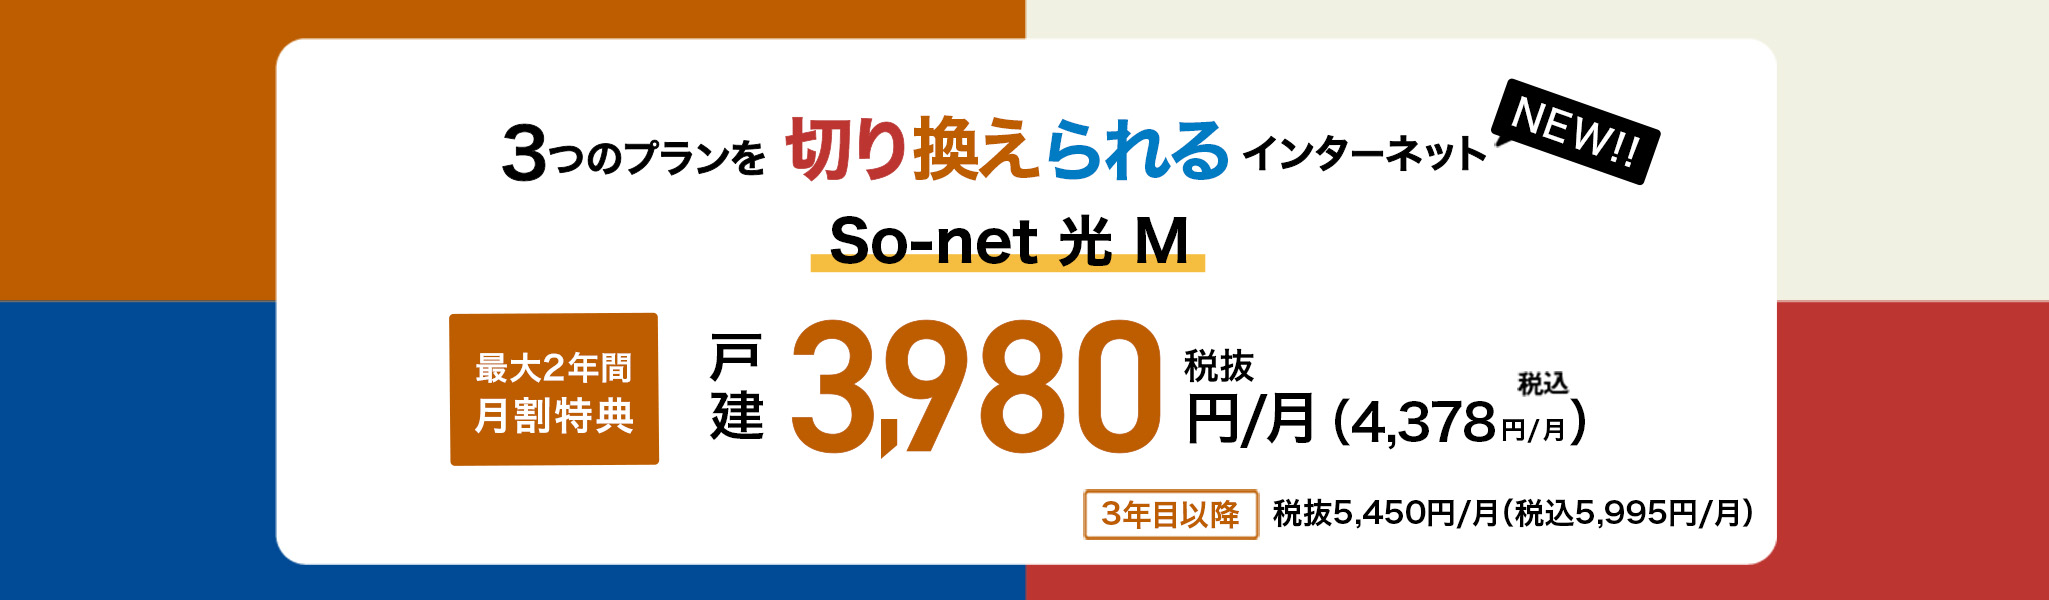 3つのプランを切り換えられるインターネット So-net 光 M 最大2年間月割特典 戸建 3,980円/月 税抜 （4,378円/月 税込）